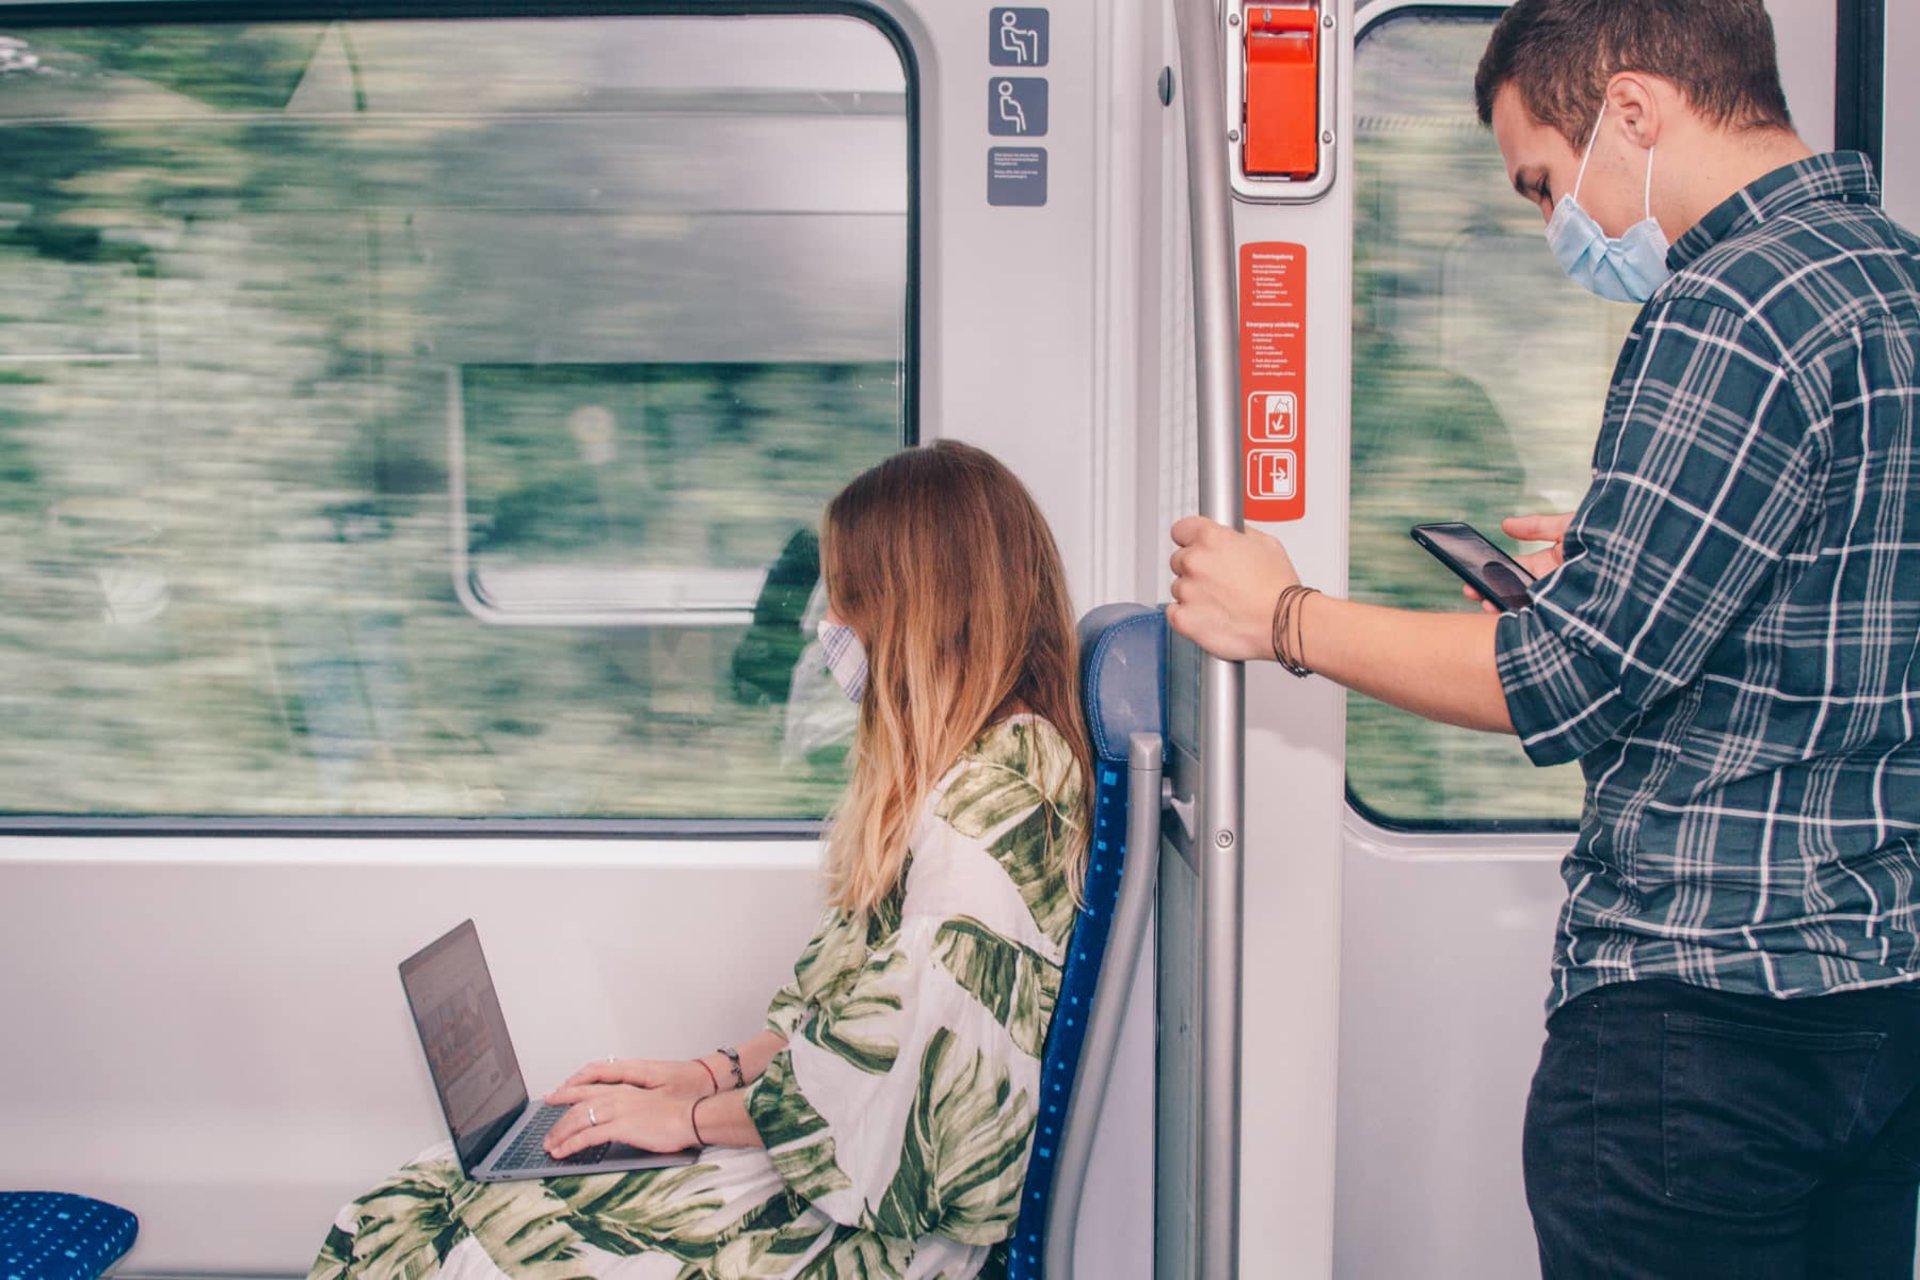 Personen nutzen Laptop und Smartphone in der S-Bahn